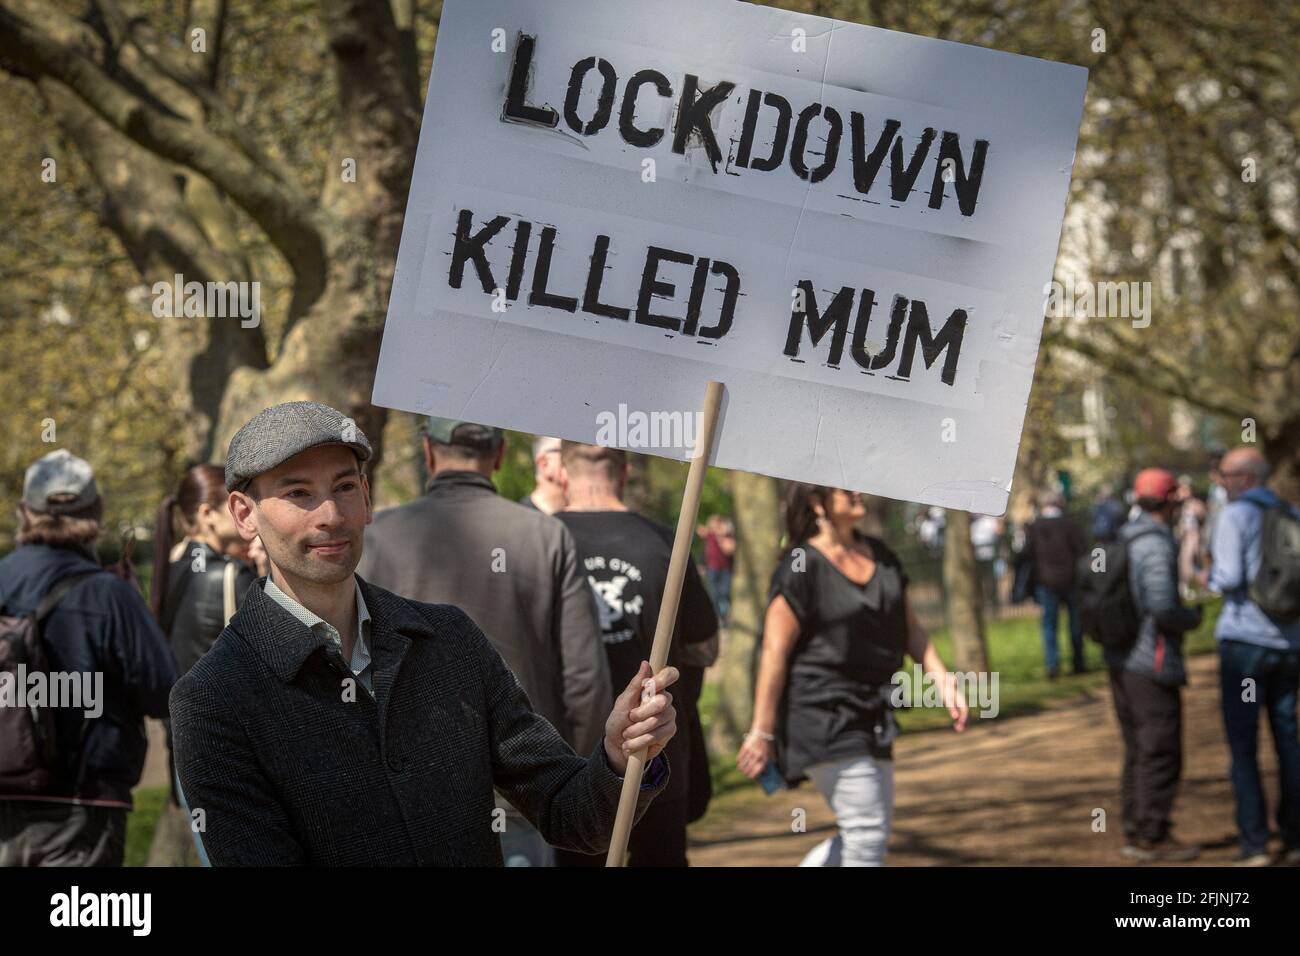 24 avril 2021, Londres, Angleterre, Royaume-Uni: Man tient un panneau "Lockdown tué maman" lors d'une manifestation anti-verrouillage "Unite for Freedom" à Londres Banque D'Images